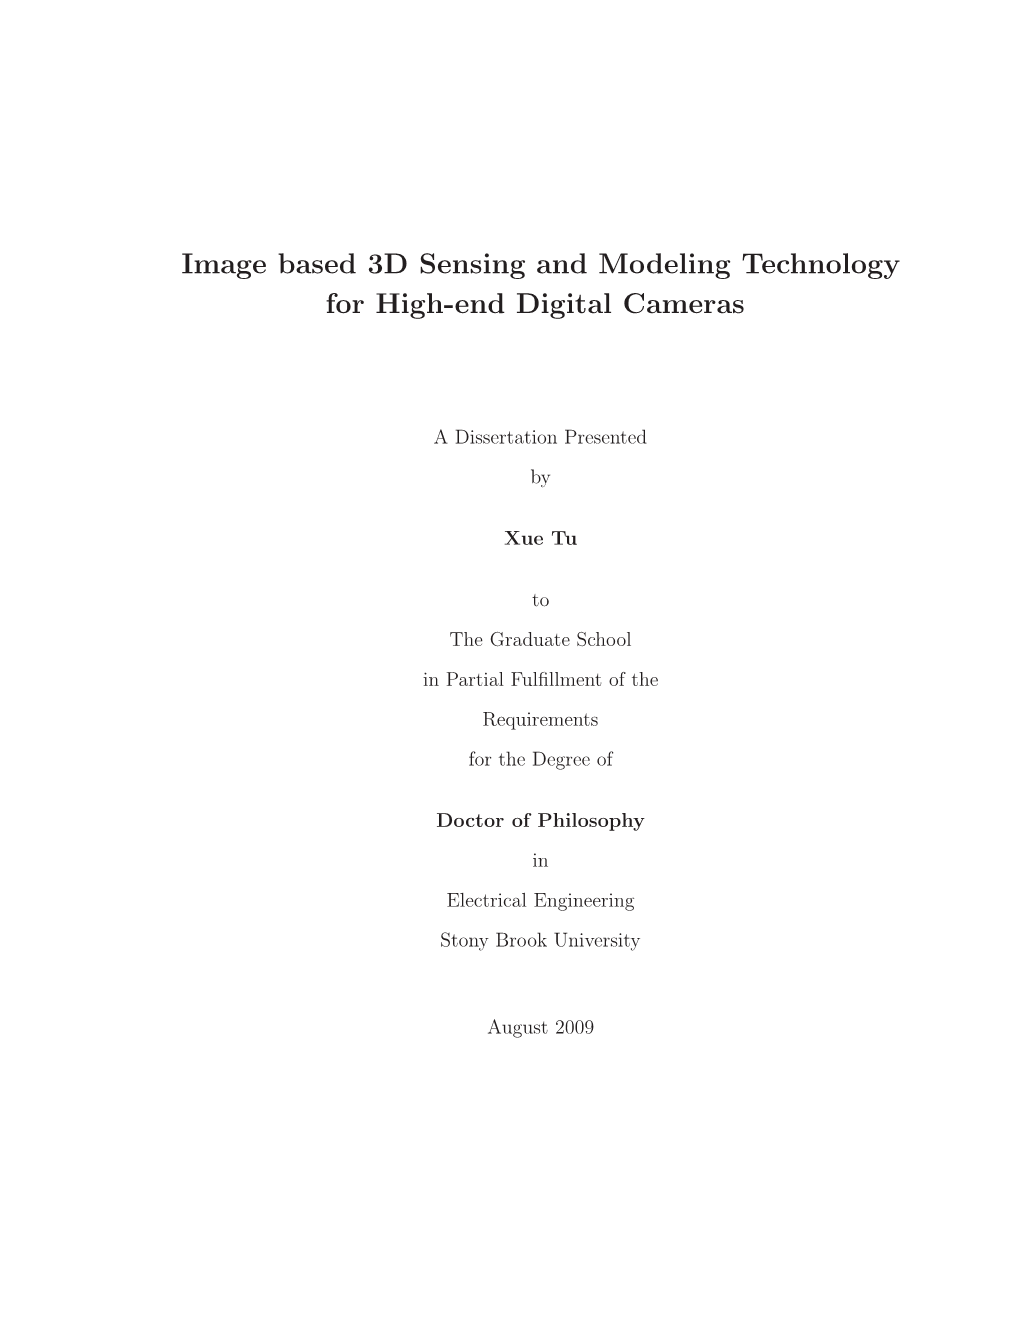 Image Based 3D Sensing and Modeling Technology for High-End Digital Cameras